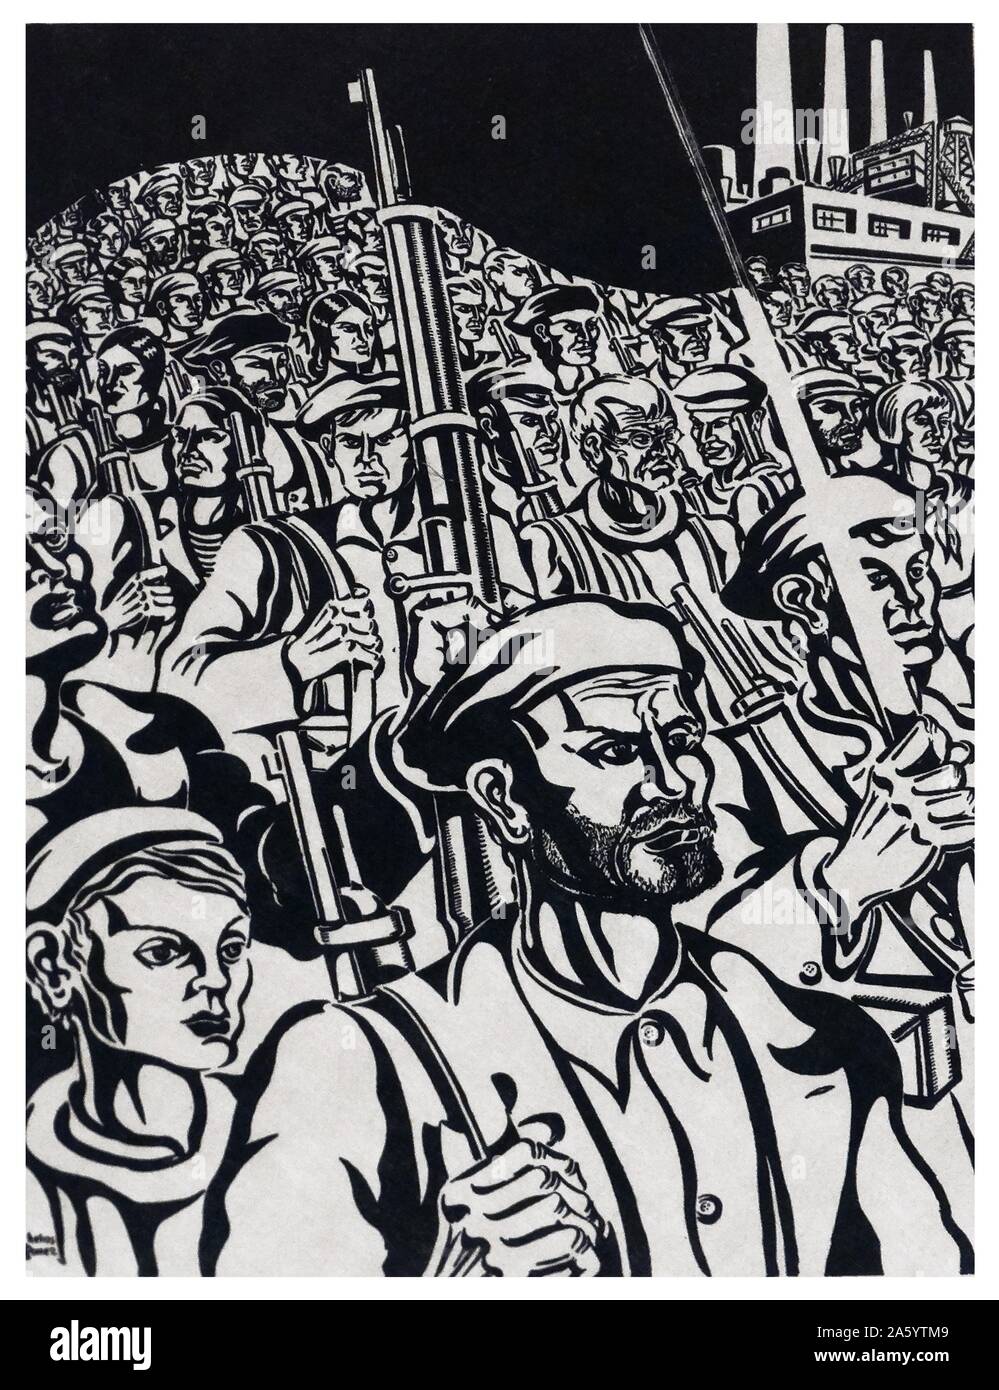 Zeichnung der Soldaten auf dem Papier, vom spanischen Bürgerkrieg Künstler Francisco Mateos 1894-1976 Stockfoto